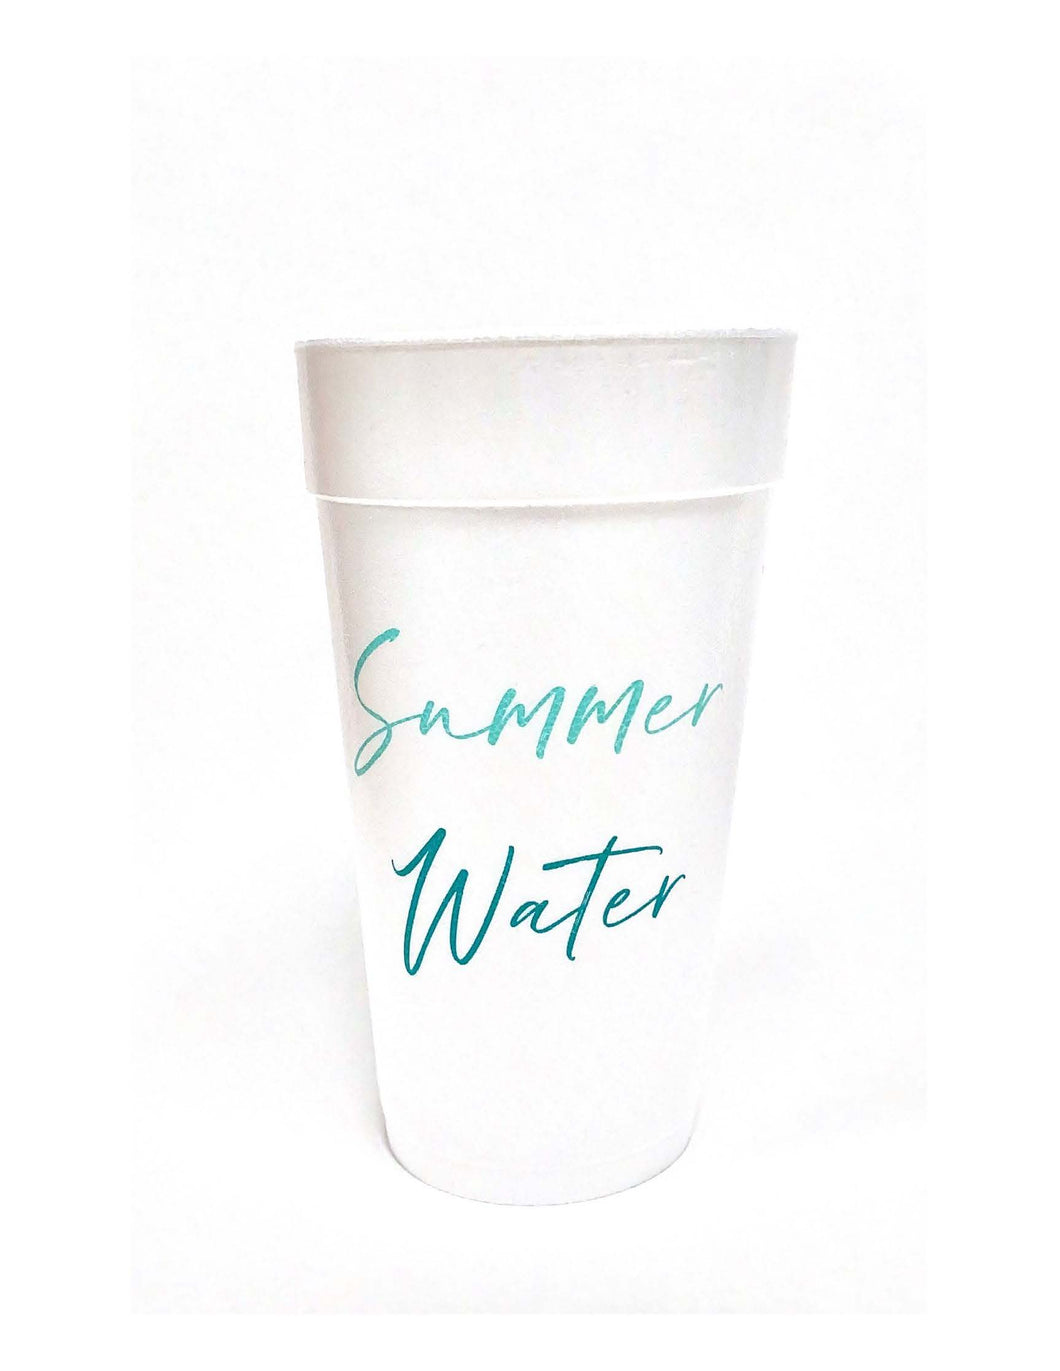 Summer Water Foam Cups